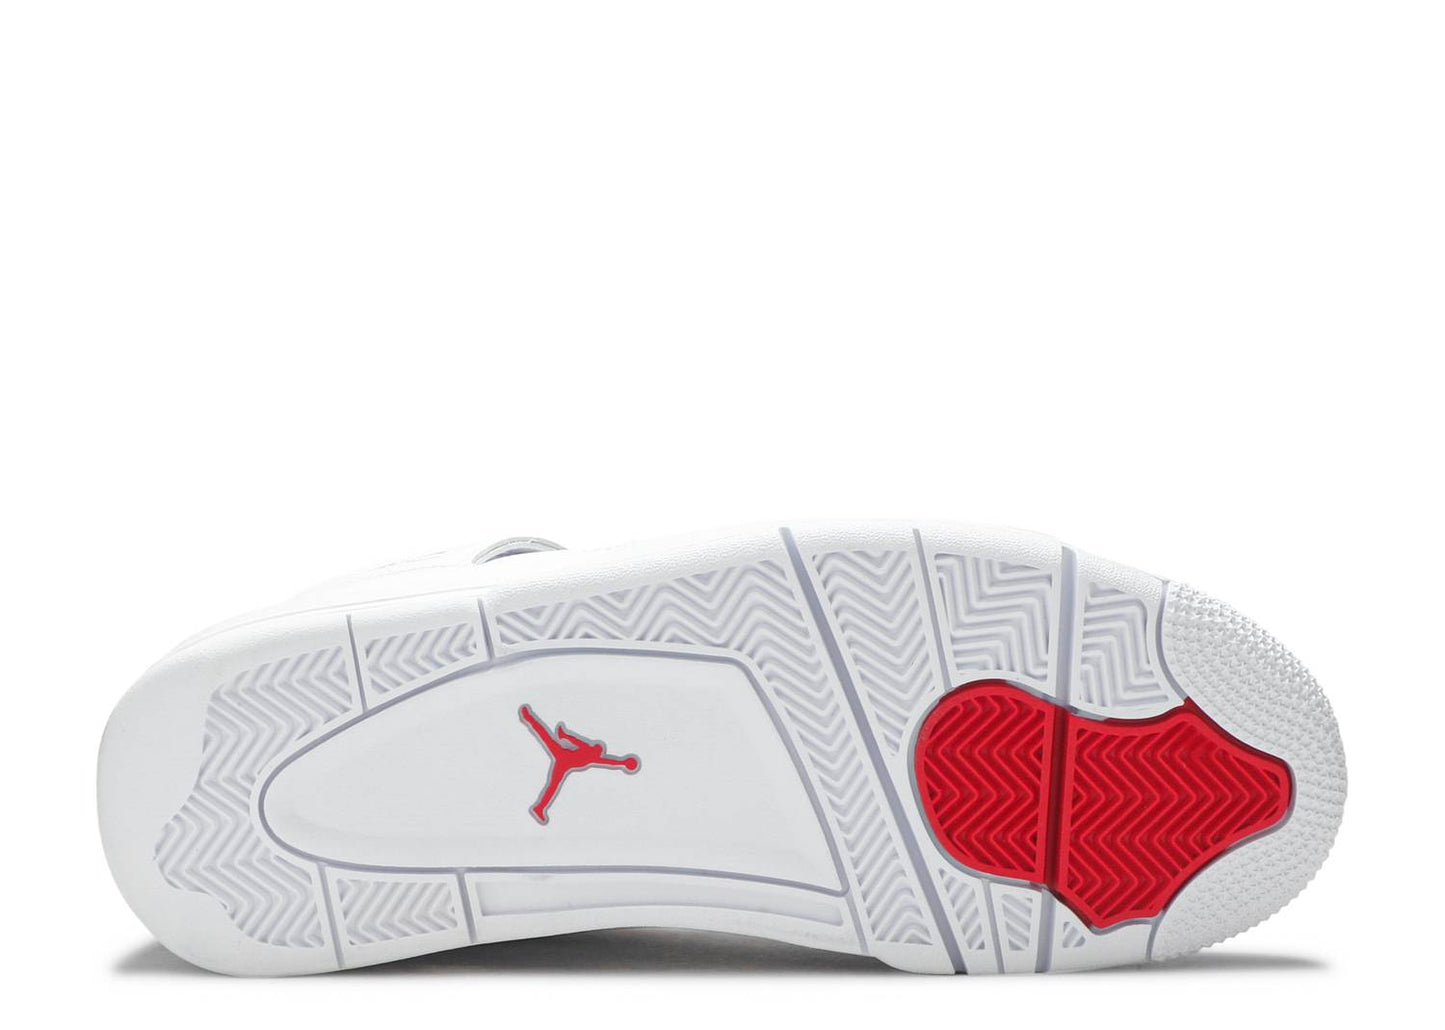 Air Jordan 4 'Metallic Red'